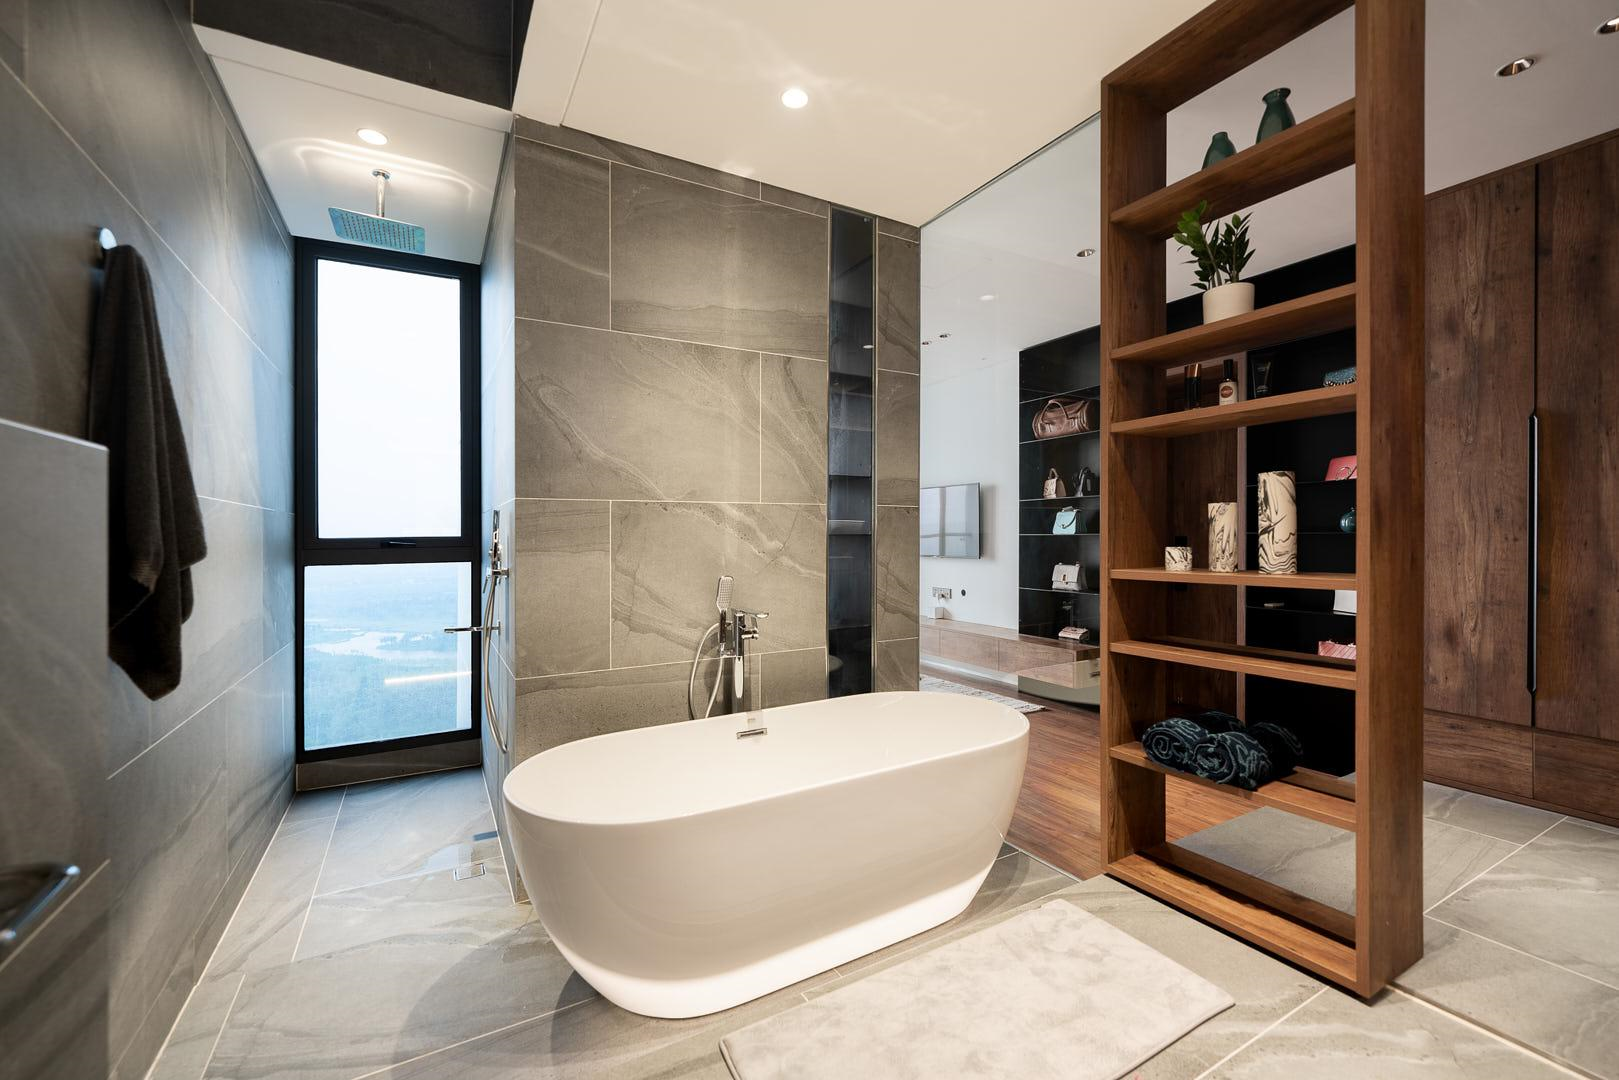 Phòng tắm nổi bật với thiết kế gỗ hiện đại và thiết bị vệ sinh cao cấp